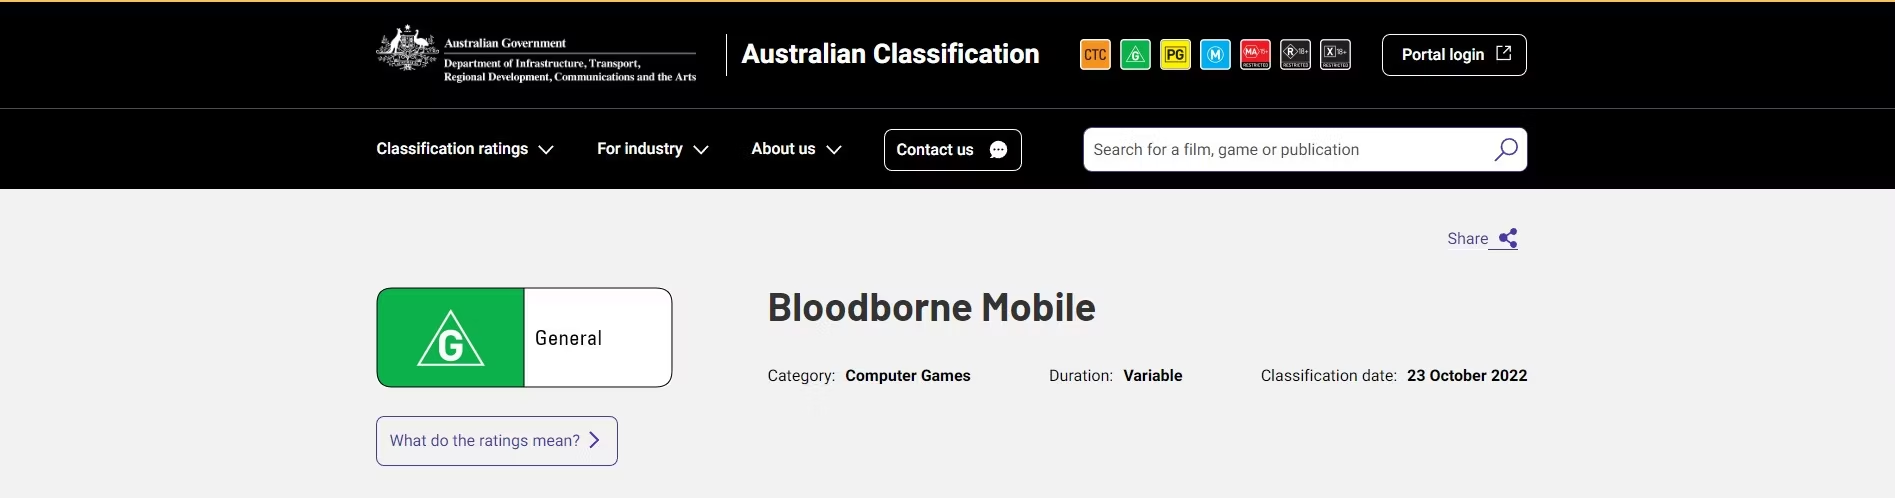 谨防山寨游戏 未授权《血源诅咒》手游通过澳洲评级 二次世界 第3张